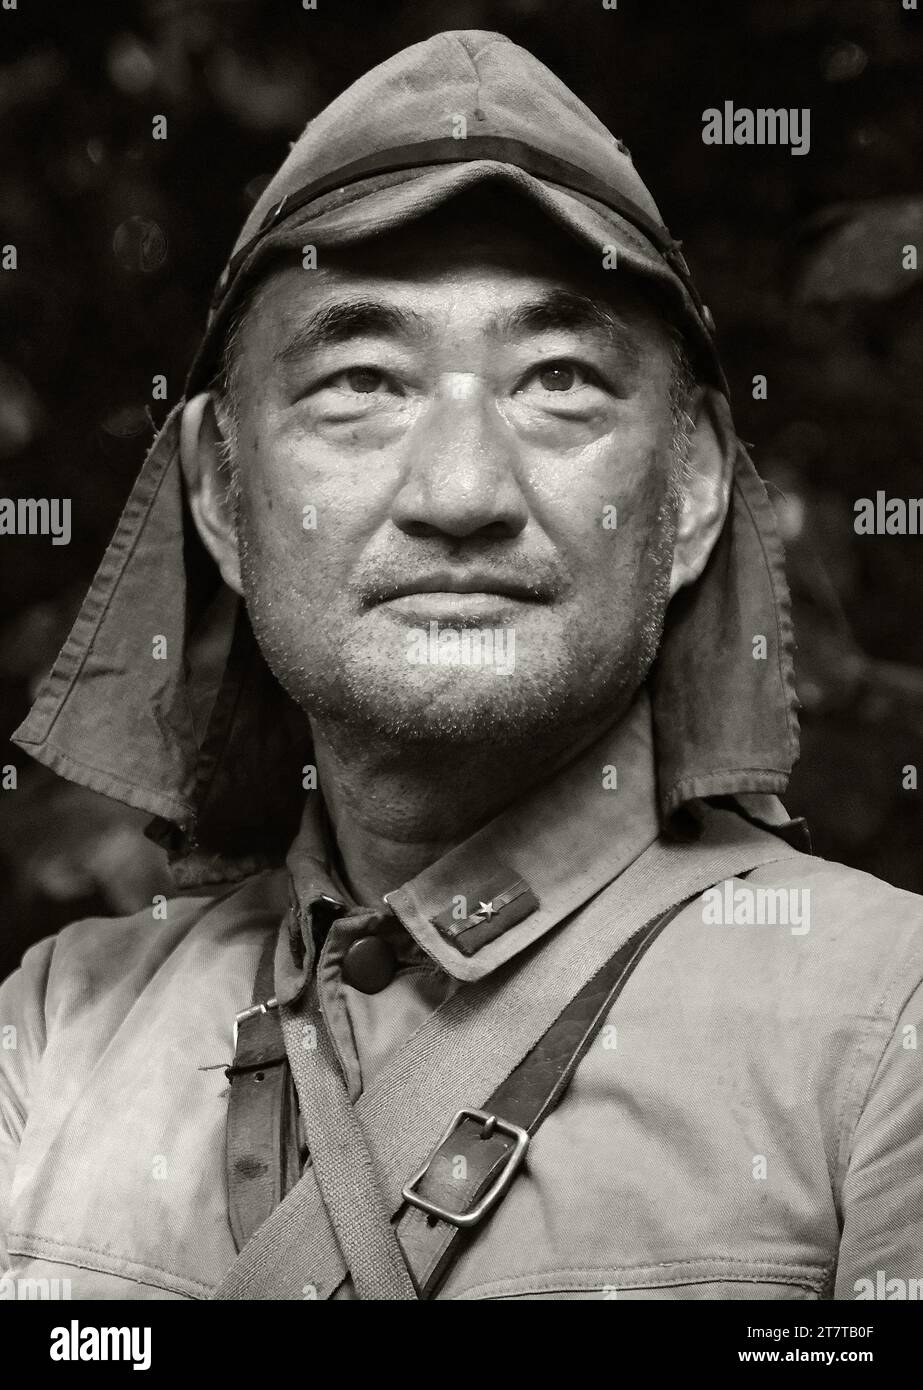 Victory Show, leicester, Großbritannien, 2023. Enactor als japanischer Feldoffizier im 2. Weltkrieg. Stockfoto